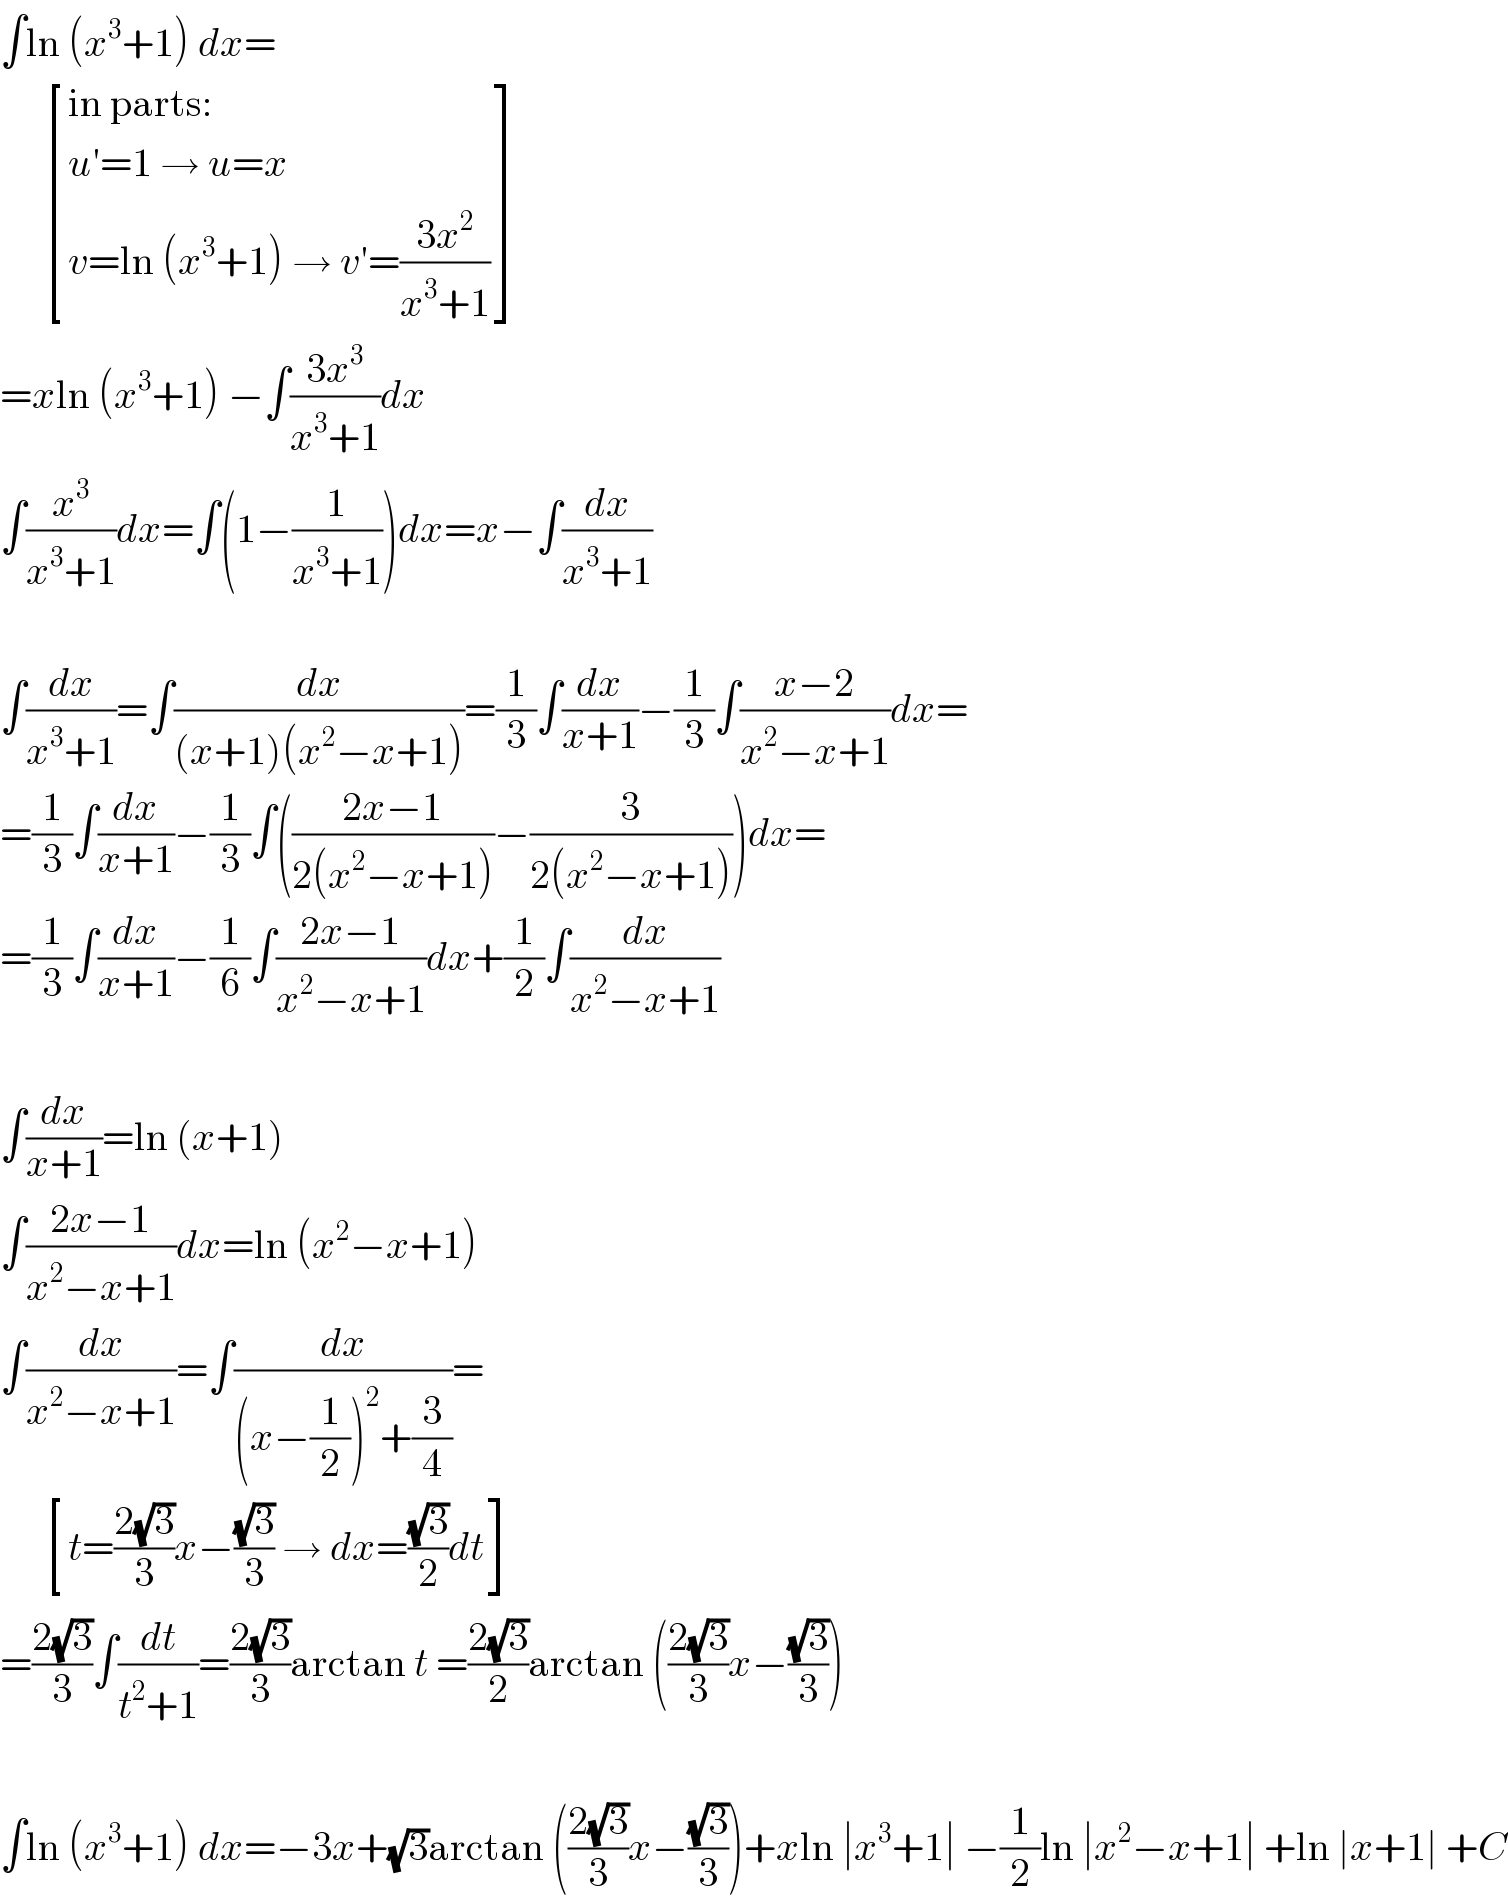 ∫ln (x^3 +1) dx=        [((in parts:)),((u′=1 → u=x)),((v=ln (x^3 +1) → v′=((3x^2 )/(x^3 +1)))) ]  =xln (x^3 +1) −∫((3x^3 )/(x^3 +1))dx  ∫(x^3 /(x^3 +1))dx=∫(1−(1/(x^3 +1)))dx=x−∫(dx/(x^3 +1))    ∫(dx/(x^3 +1))=∫(dx/((x+1)(x^2 −x+1)))=(1/3)∫(dx/(x+1))−(1/3)∫((x−2)/(x^2 −x+1))dx=  =(1/3)∫(dx/(x+1))−(1/3)∫(((2x−1)/(2(x^2 −x+1)))−(3/(2(x^2 −x+1))))dx=  =(1/3)∫(dx/(x+1))−(1/6)∫((2x−1)/(x^2 −x+1))dx+(1/2)∫(dx/(x^2 −x+1))    ∫(dx/(x+1))=ln (x+1)  ∫((2x−1)/(x^2 −x+1))dx=ln (x^2 −x+1)  ∫(dx/(x^2 −x+1))=∫(dx/((x−(1/2))^2 +(3/4)))=        [((t=((2(√3))/3)x−((√3)/3) → dx=((√3)/2)dt)) ]  =((2(√3))/3)∫(dt/(t^2 +1))=((2(√3))/3)arctan t =((2(√3))/2)arctan (((2(√3))/3)x−((√3)/3))    ∫ln (x^3 +1) dx=−3x+(√3)arctan (((2(√3))/3)x−((√3)/3))+xln ∣x^3 +1∣ −(1/2)ln ∣x^2 −x+1∣ +ln ∣x+1∣ +C  